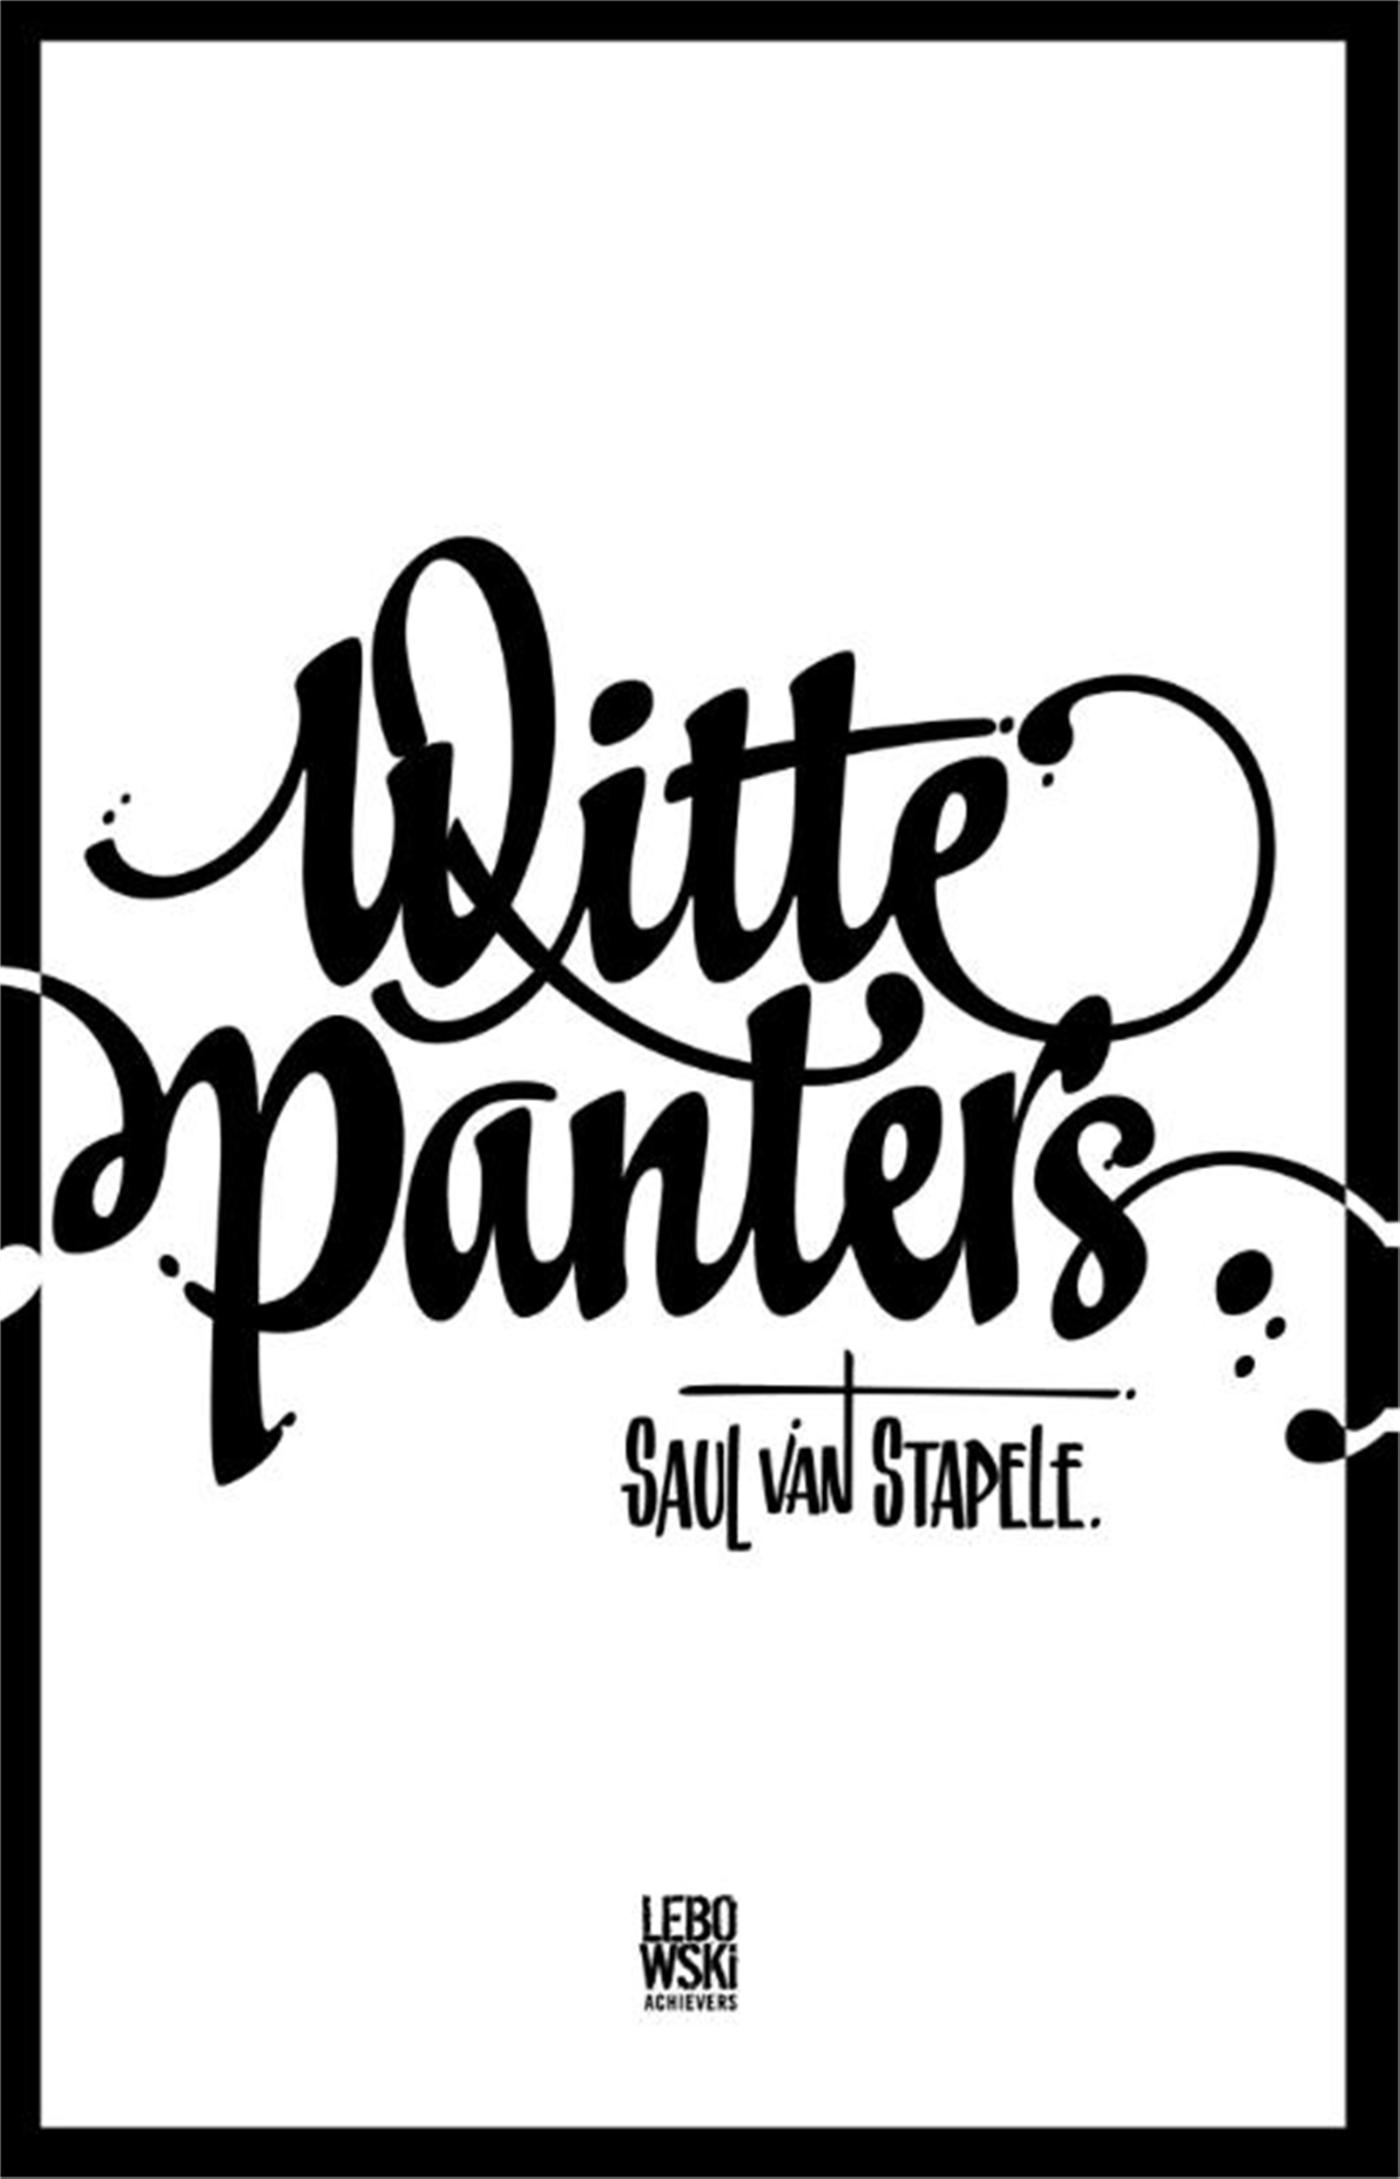 Witte panters (Ebook)